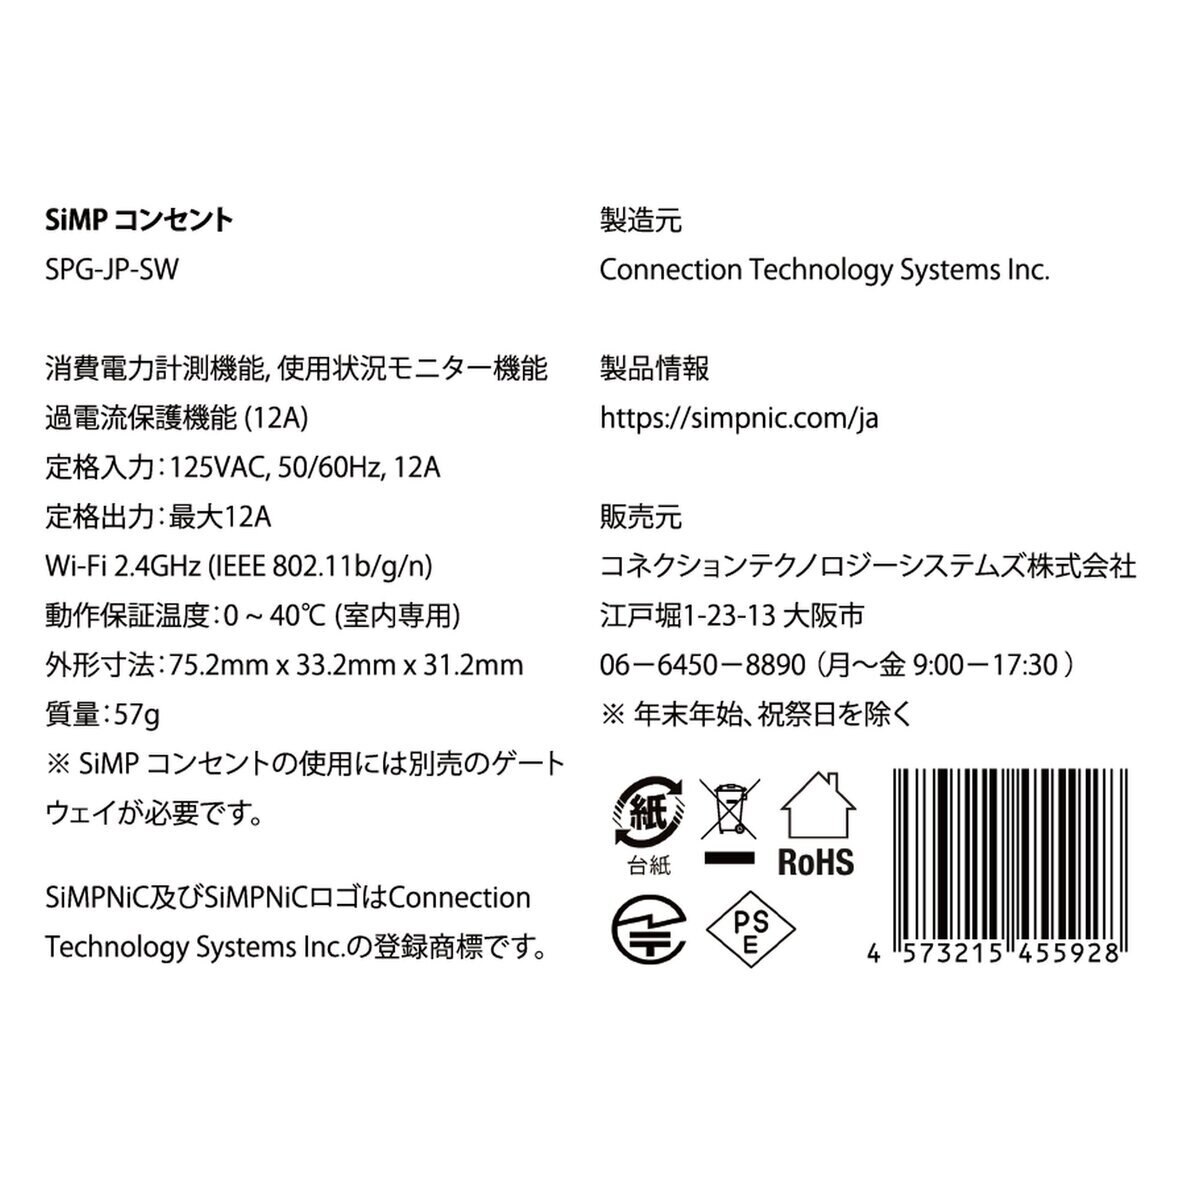 SiMPNiC スマートコンセント x 3個セット KIT-02-JPK